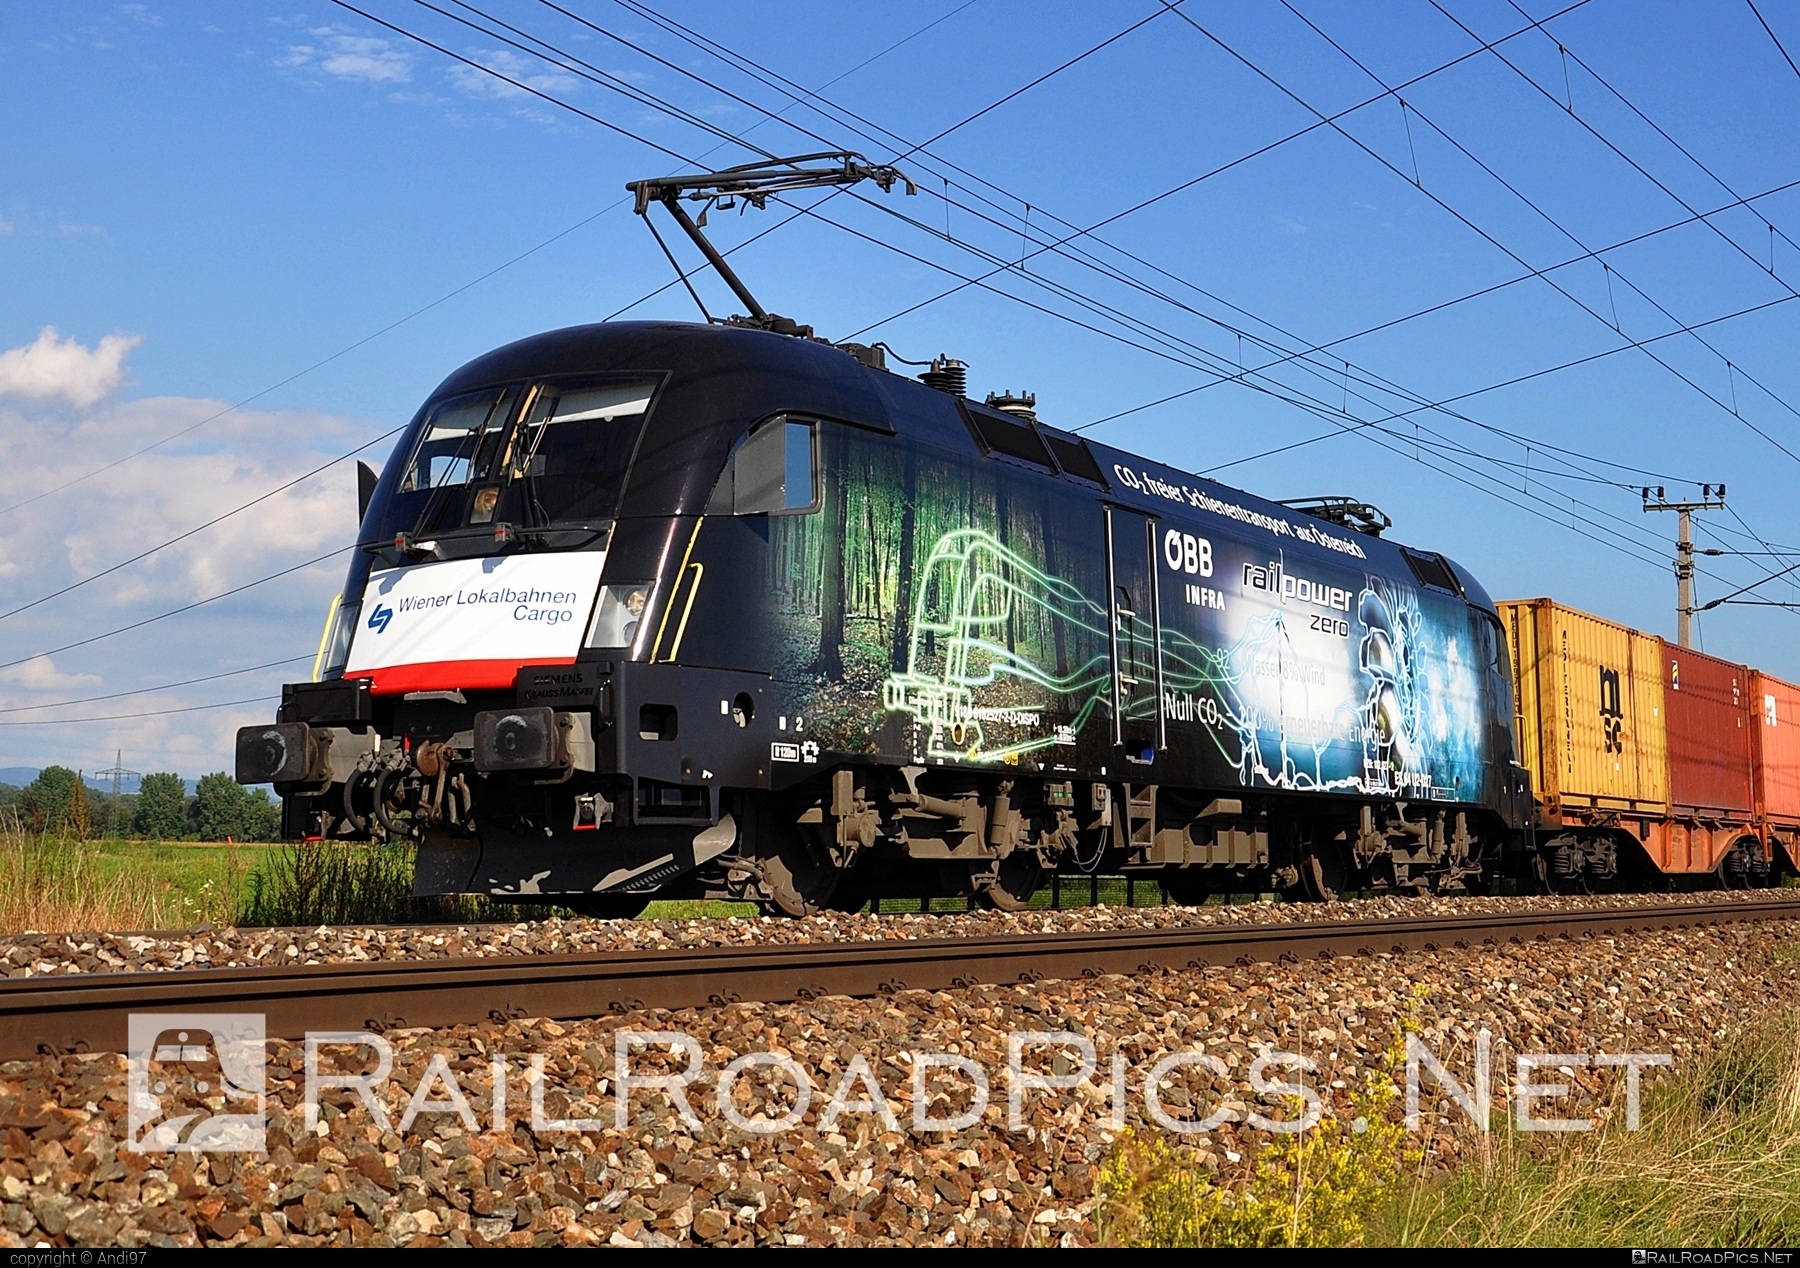 Siemens ES 64 U2 - 182 527 operated by Wiener Lokalbahnen Cargo GmbH #dispolok #es64 #es64u2 #eurosprinter #mitsuirailcapitaleurope #mitsuirailcapitaleuropegmbh #mrce #siemens #siemensEs64 #siemensEs64u2 #siemenstaurus #taurus #tauruslocomotive #wienerlokalbahnencargo #wienerlokalbahnencargogmbh #wlc